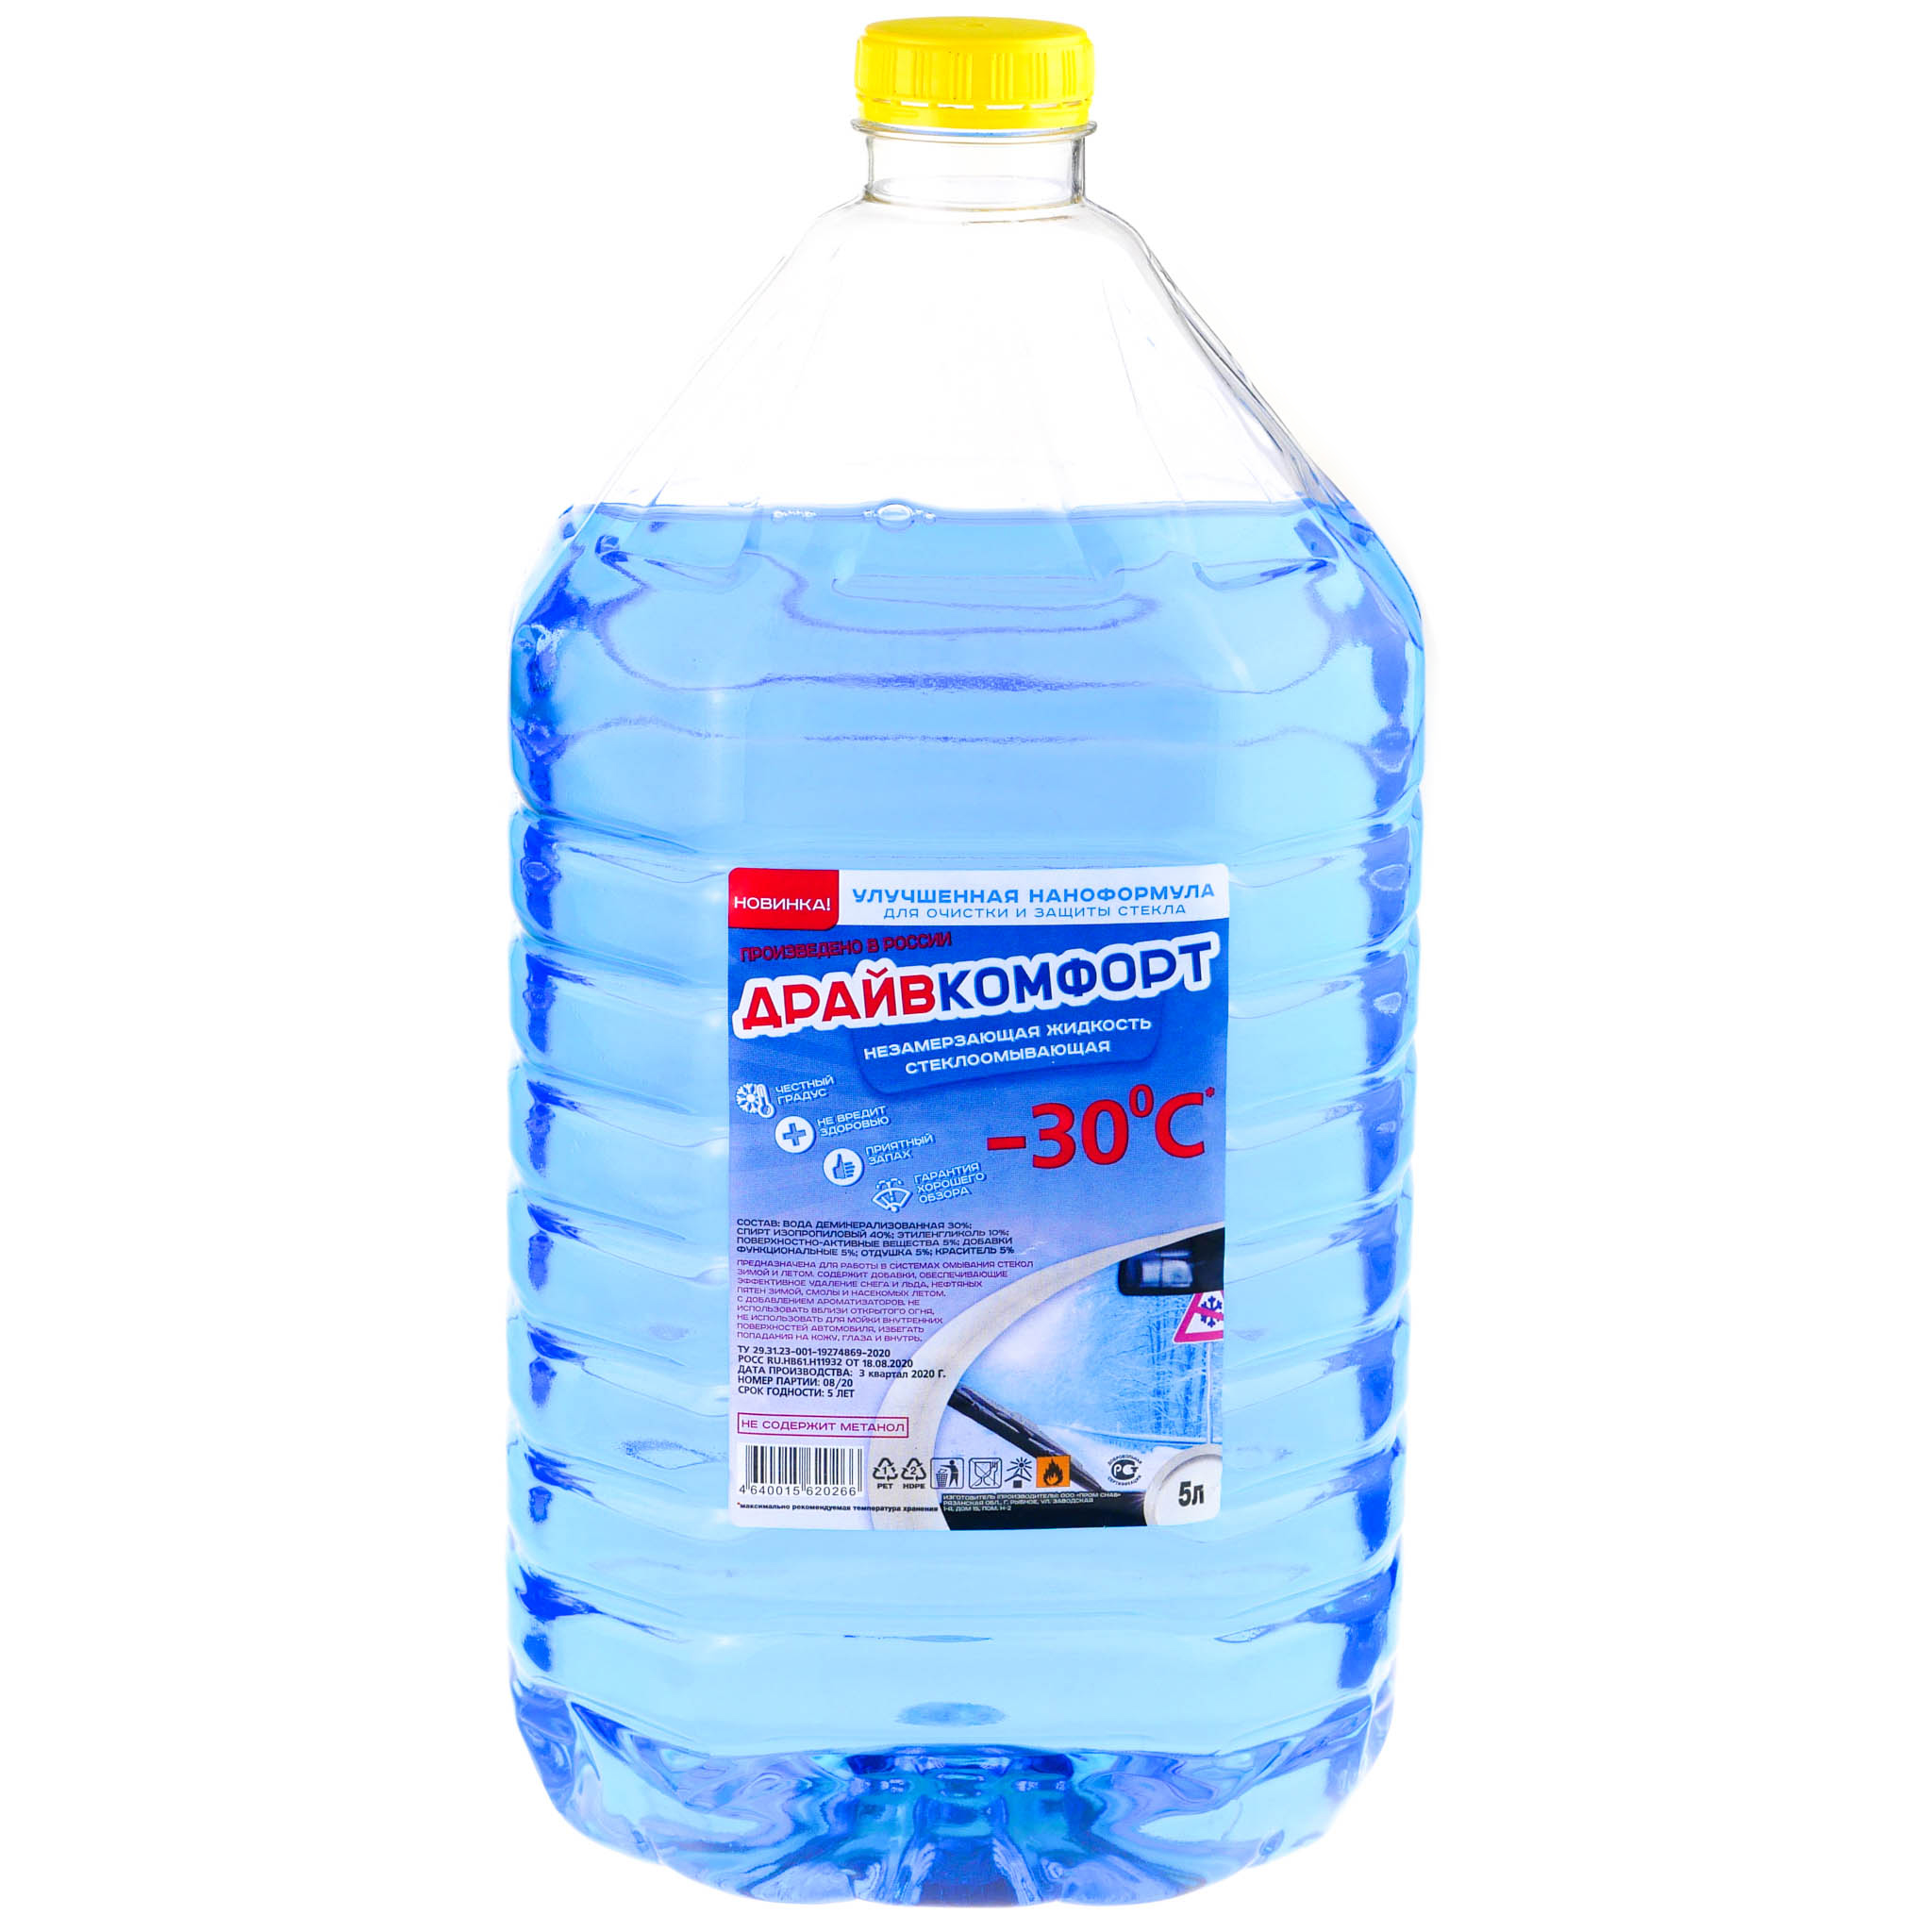 Незамерзающая стеклоомывающая жидкость (Синяя) (до -30°C)  5,0 л